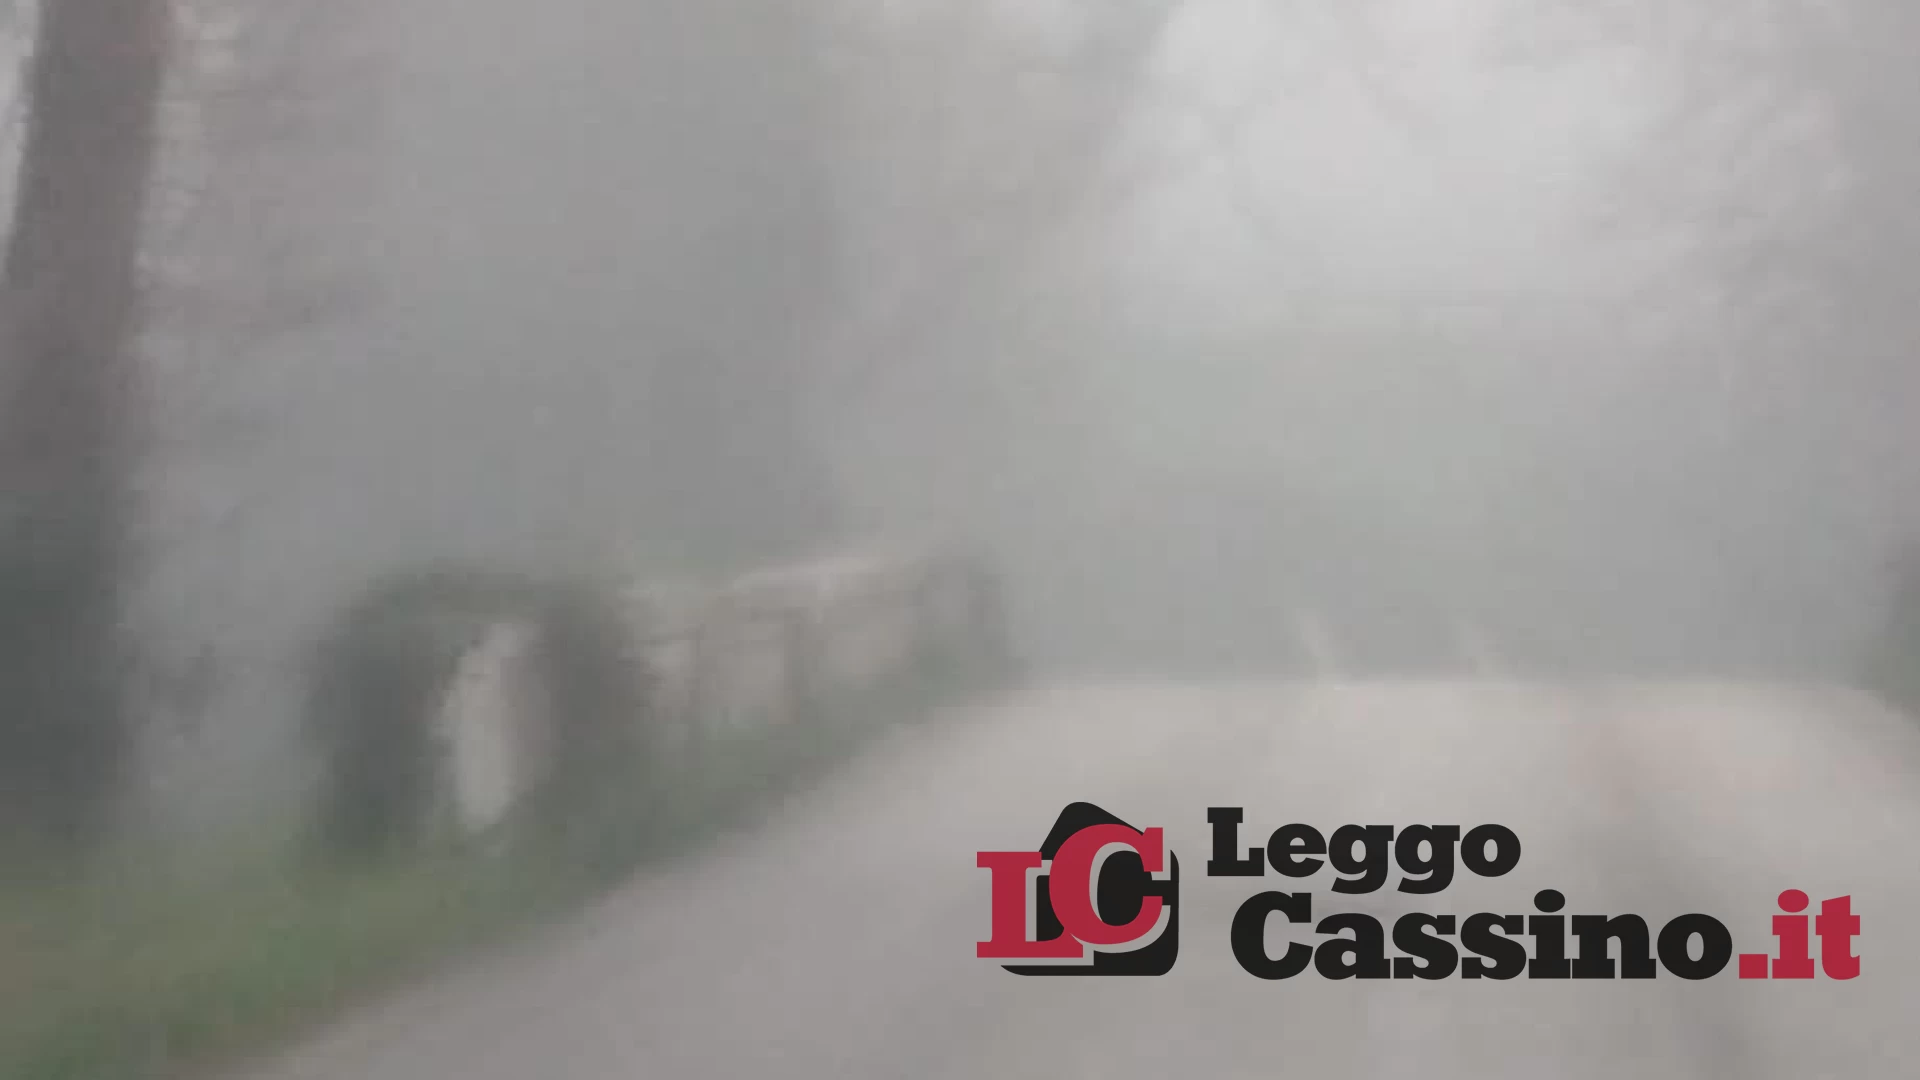 Forte nebbia e strisce sparite: continuano i disagi su via Appia Nuova